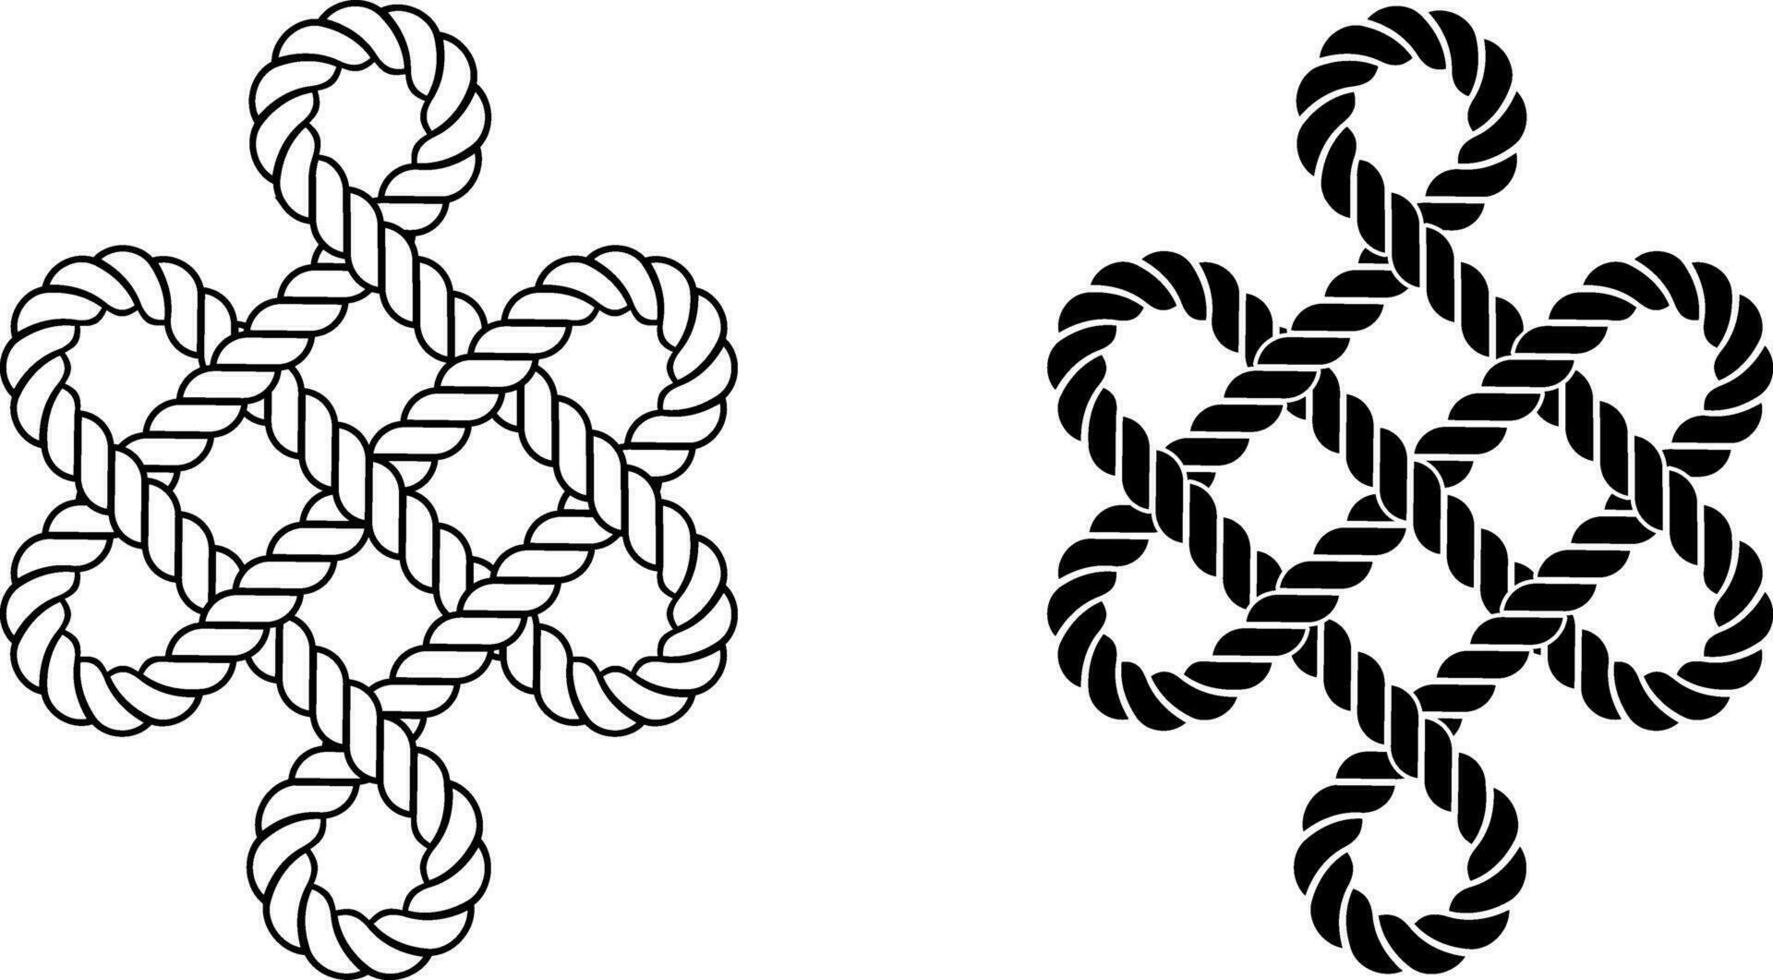 schema silhouette mistico corda nodo simbolo impostato vettore